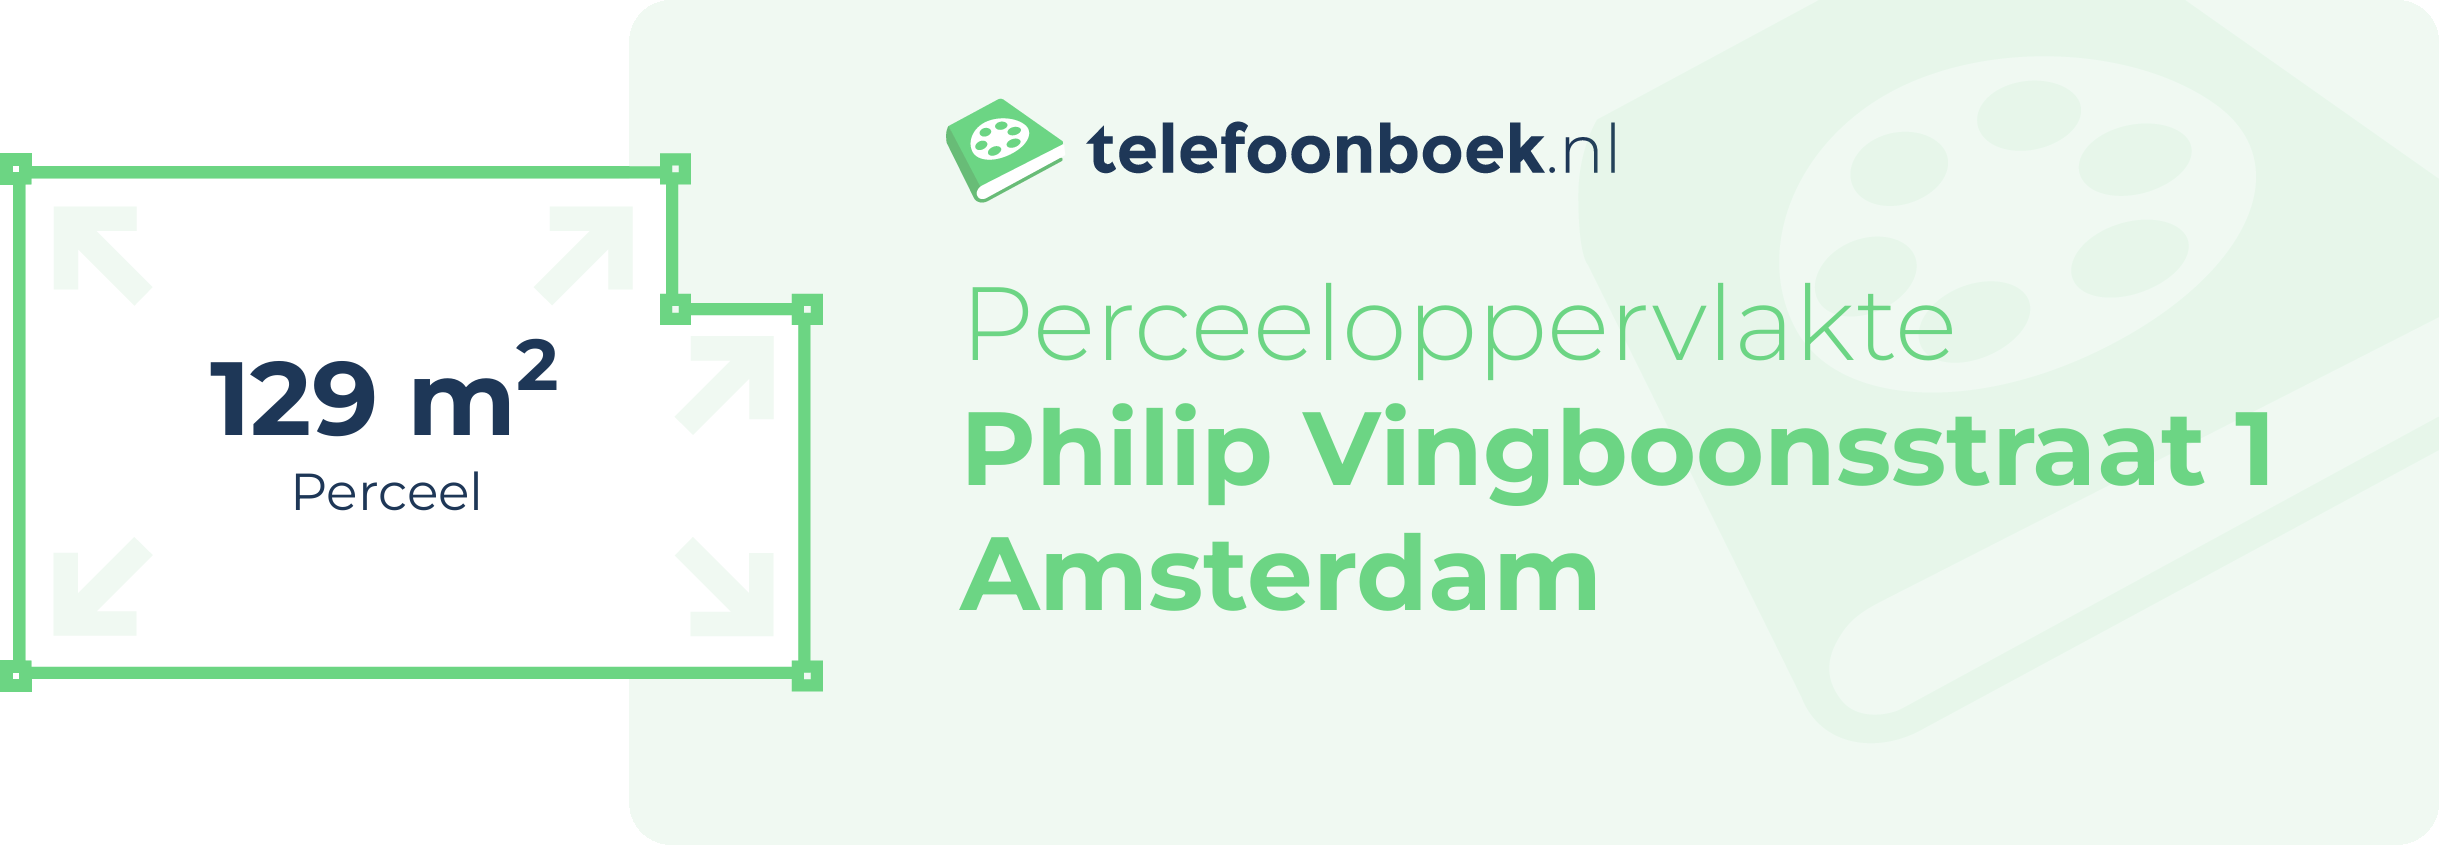 Perceeloppervlakte Philip Vingboonsstraat 1 Amsterdam